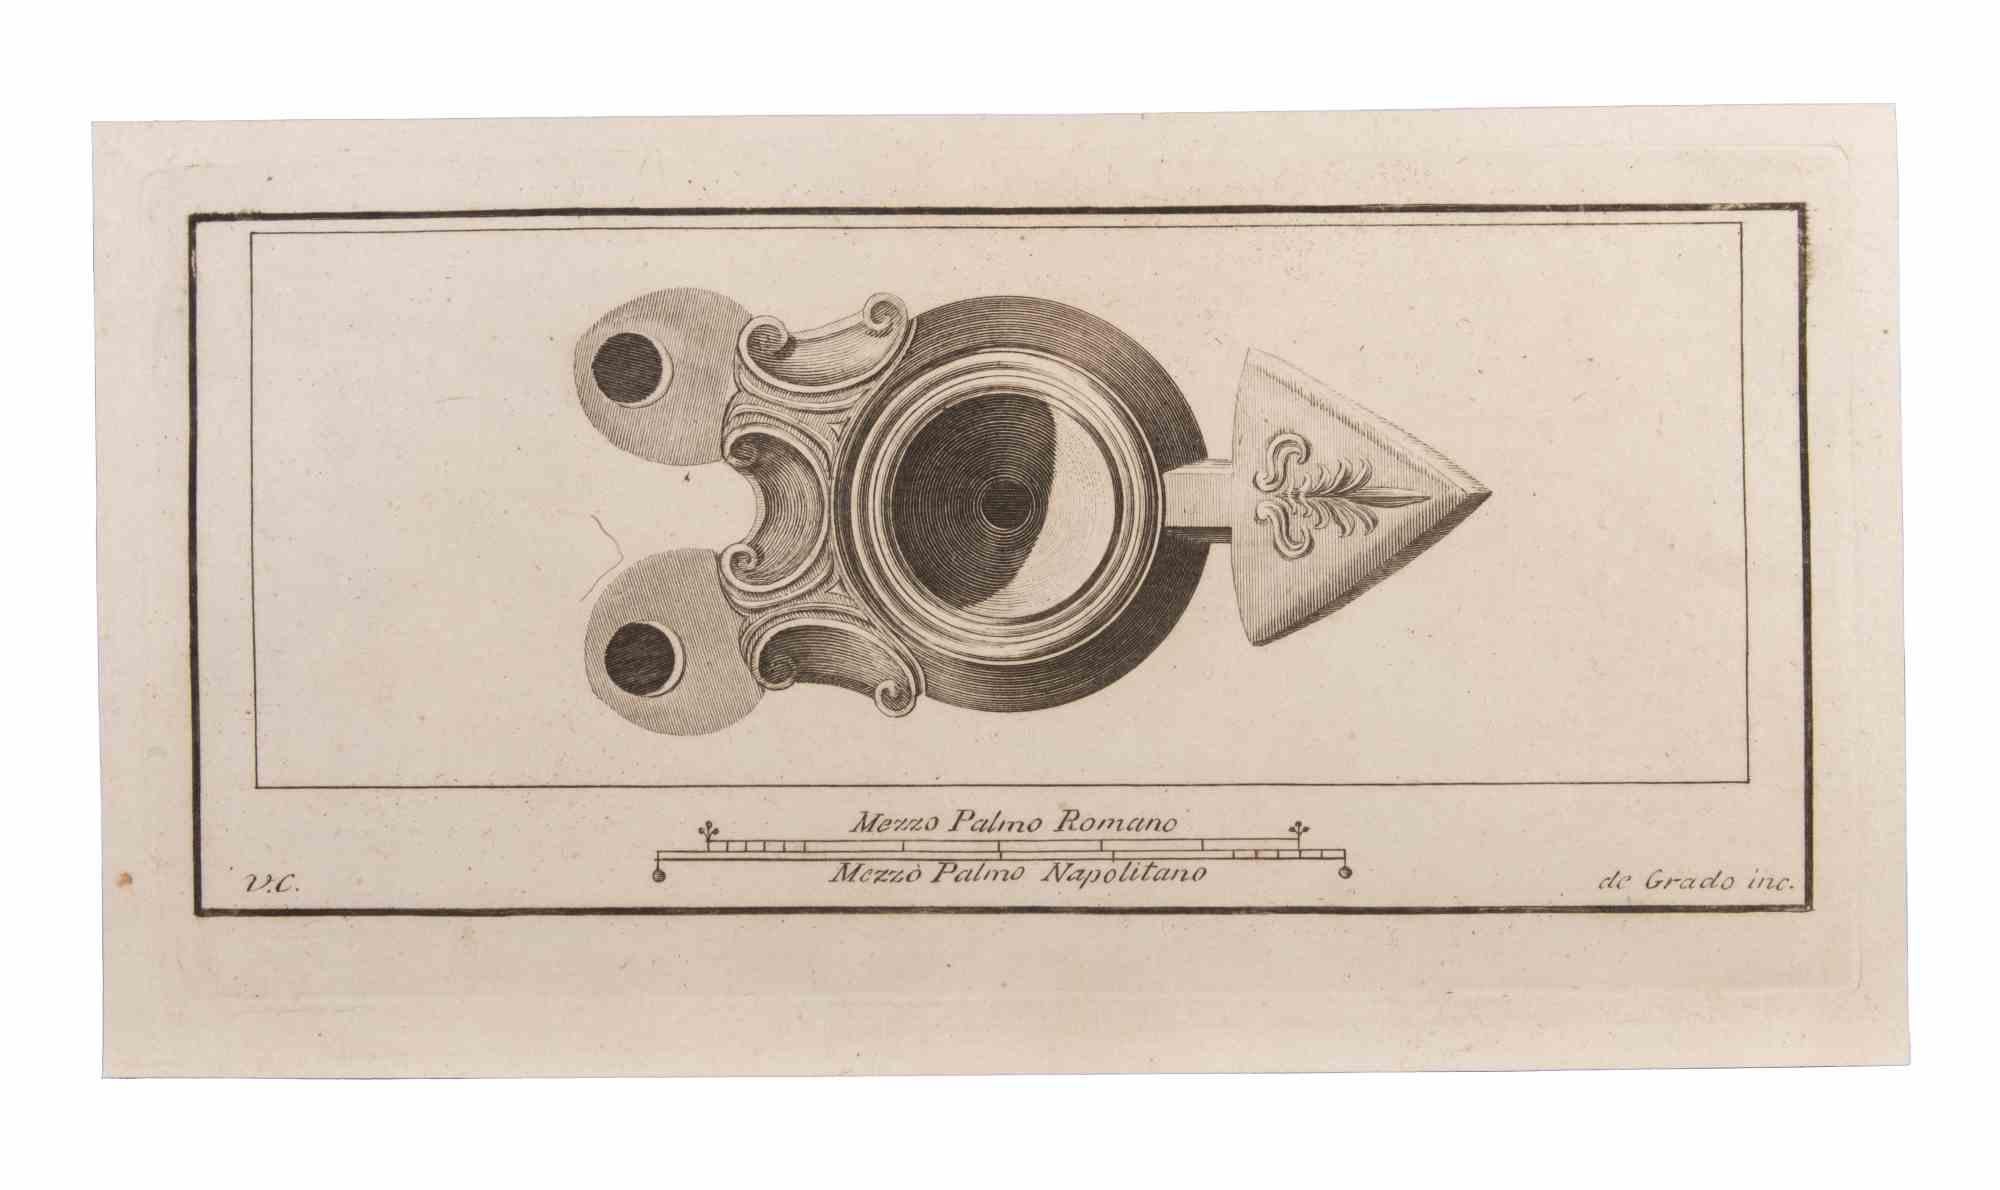 Öllampe mit Dekoration ist eine Radierung realisiert von  Filippo de Grado (1705-1780).

Die Radierung gehört zu der Druckserie "Antiquities of Herculaneum Exposed" (Originaltitel: "Le Antichità di Ercolano Esposte"), einem achtbändigen Band mit